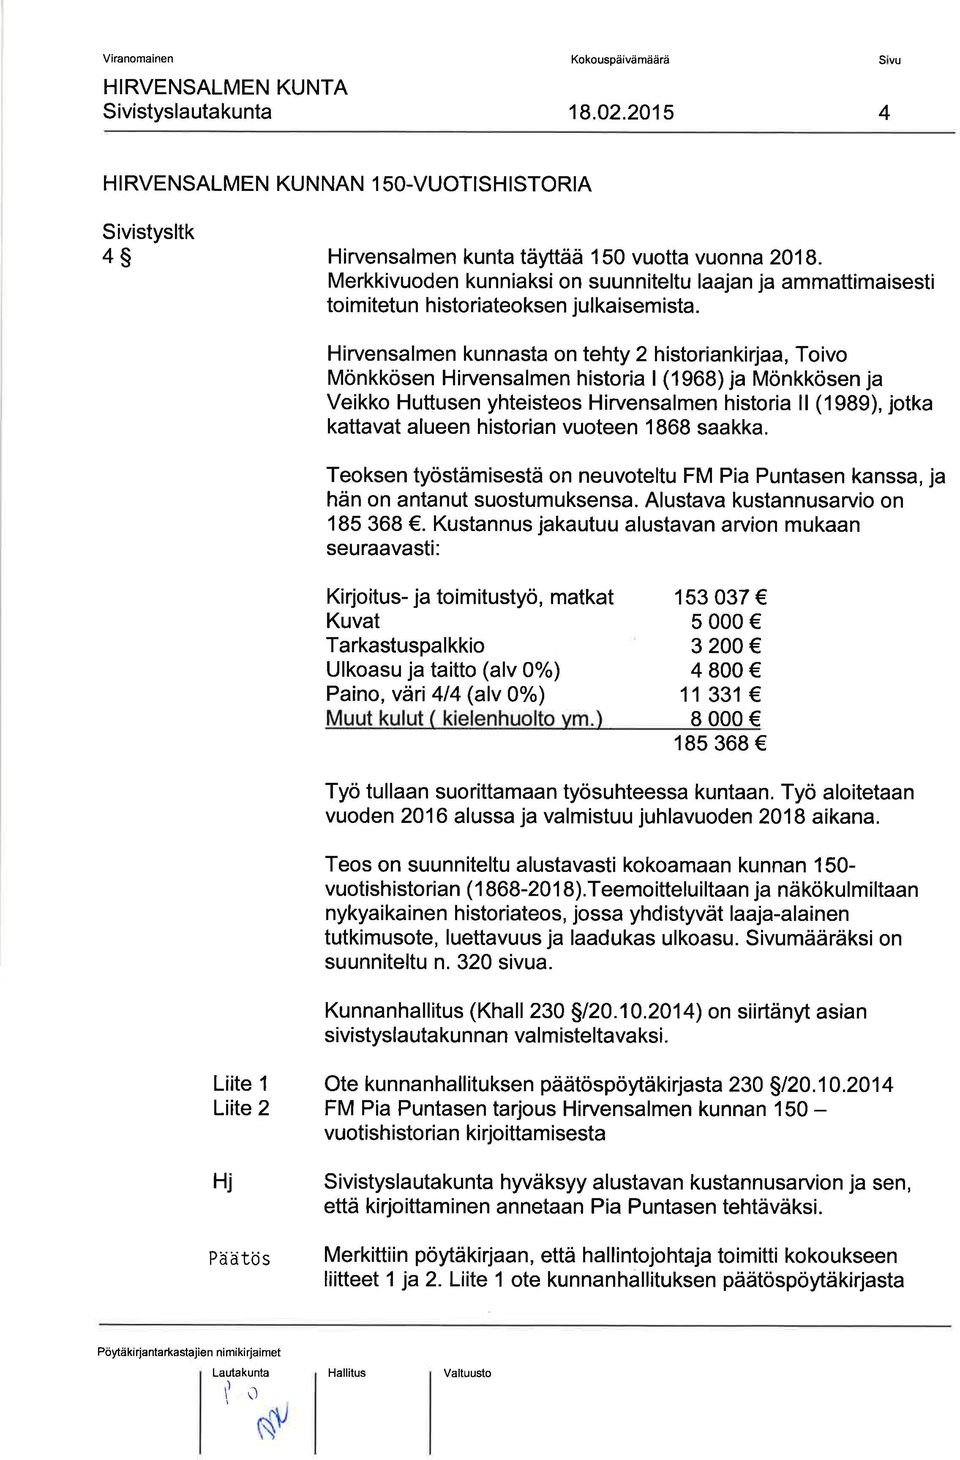 Hirvensalmen kunnasta on tehty 2 historiankirjaa, Toivo Mönkkösen Hirvensalmen historia (1968) ja Mönkkösen ja Veikko Huttusen yhteisteos Hirvensalmen historia ll (1989), jotka kattavat alueen